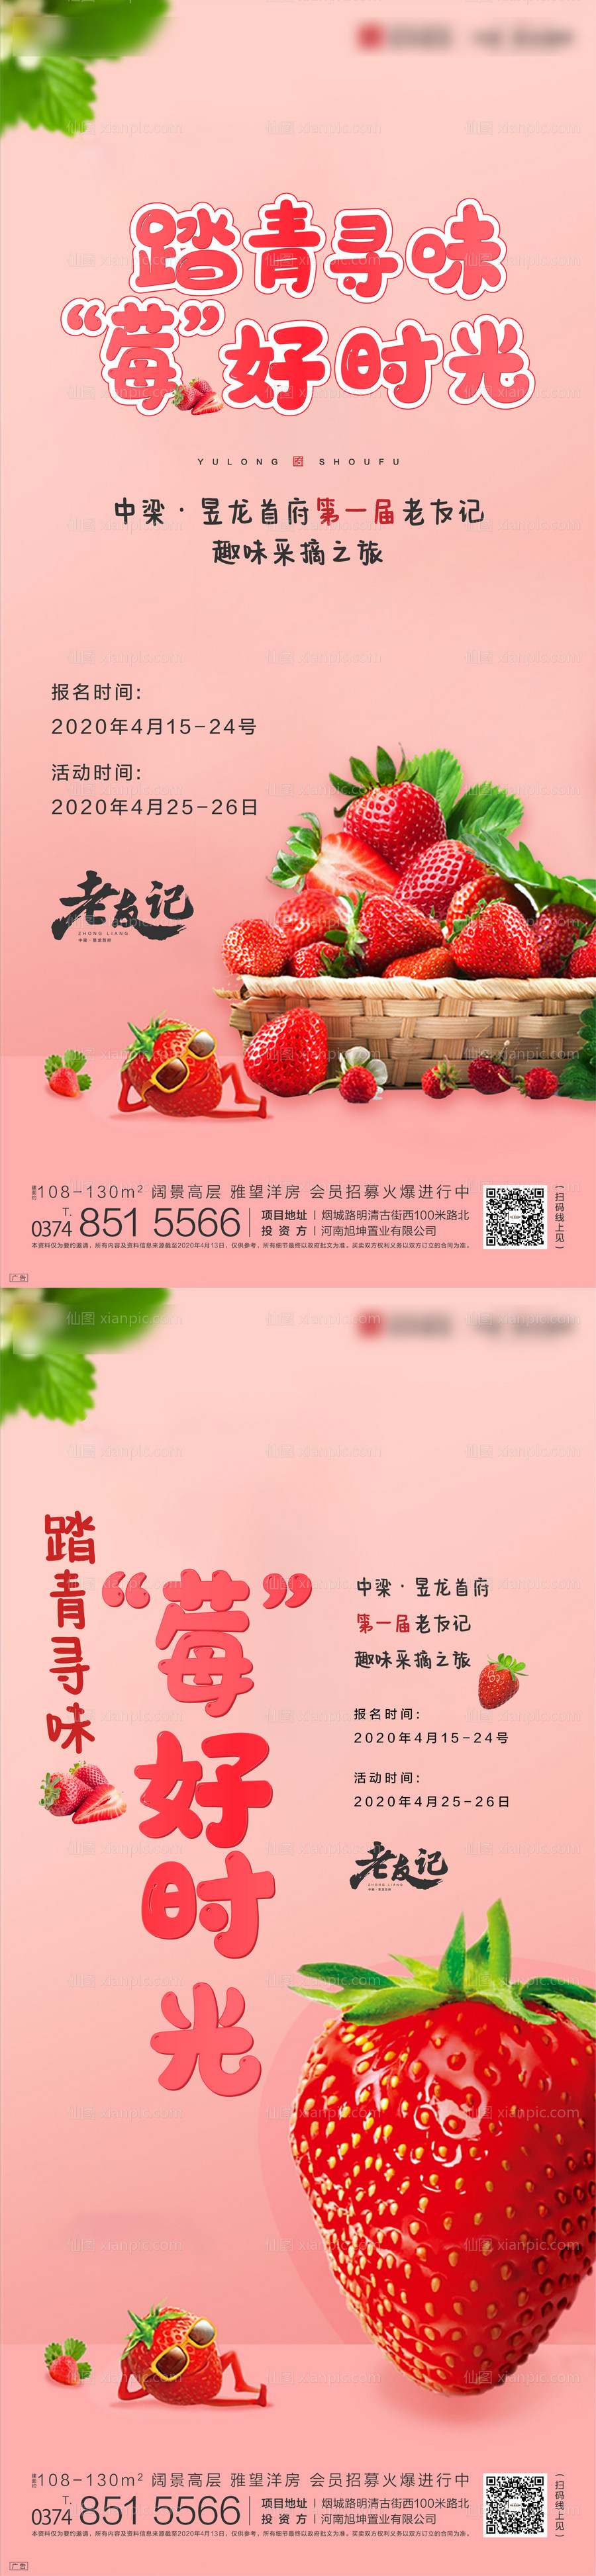 素材乐-草莓采摘前宣移动端微信海报